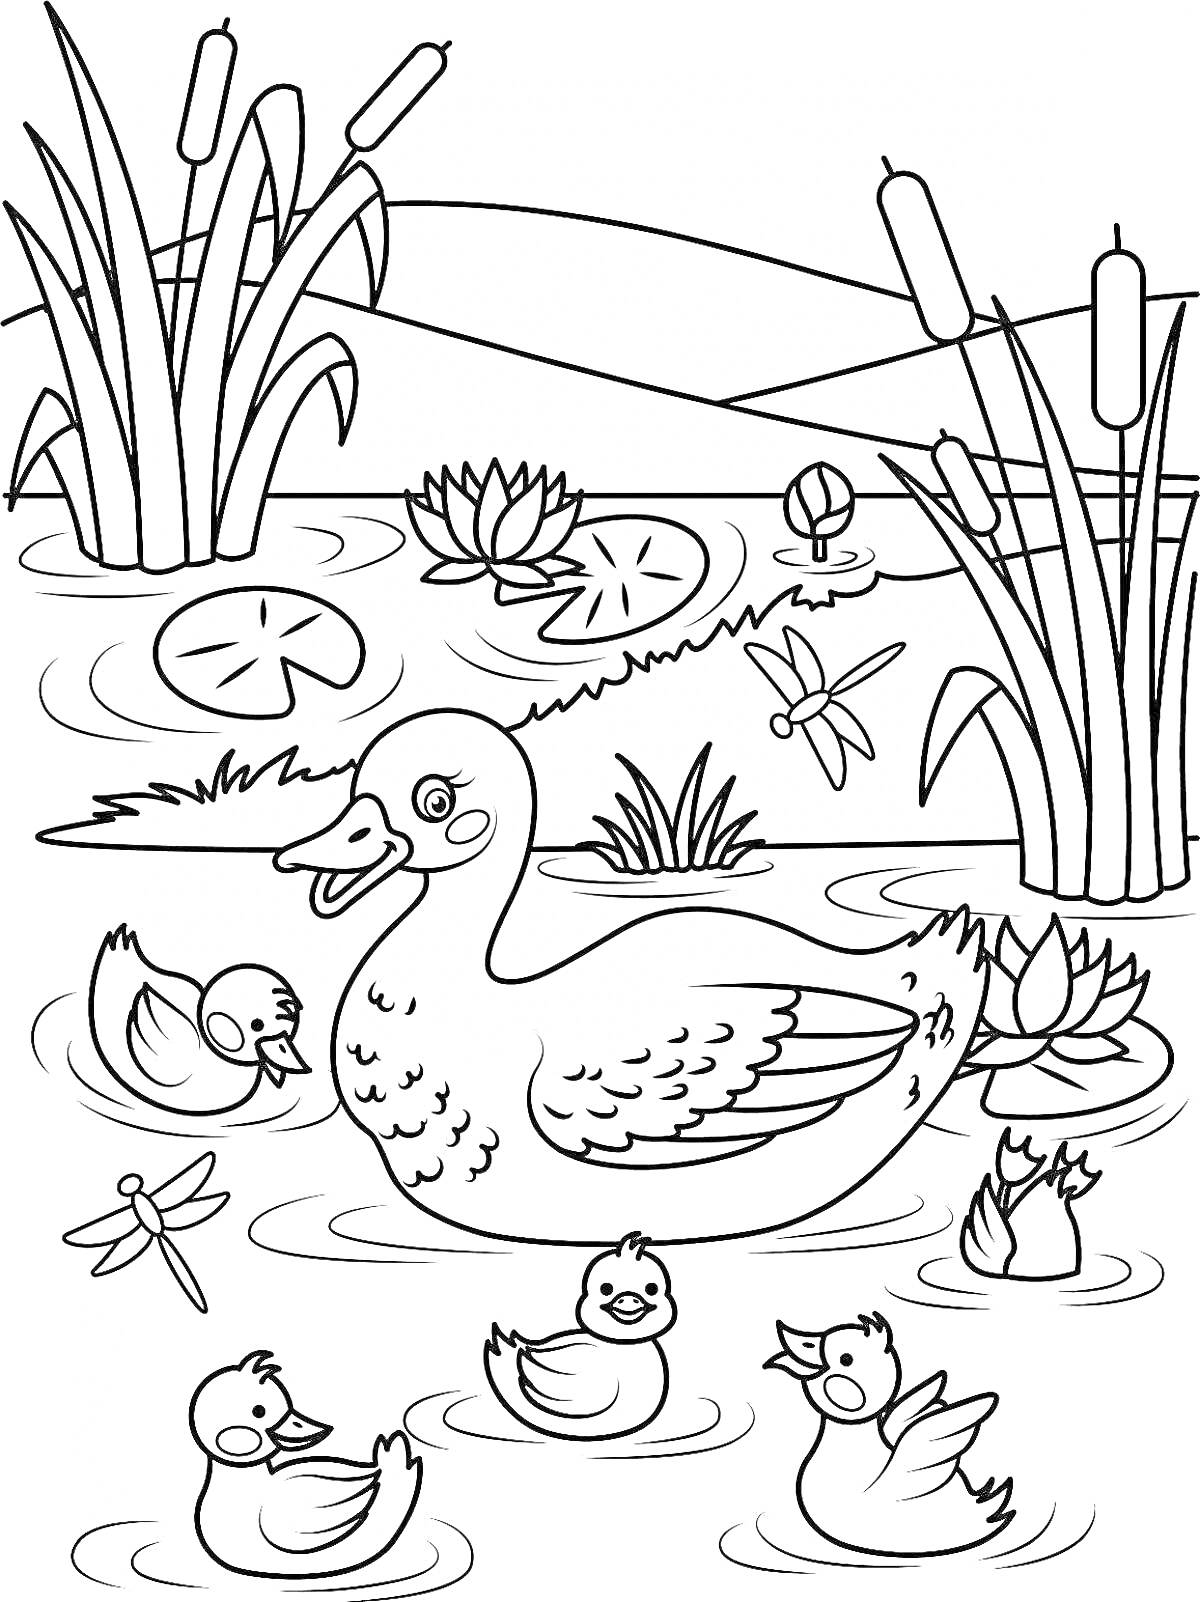 Утка с утятами в пруду с лилиями, камышами и стрекозами